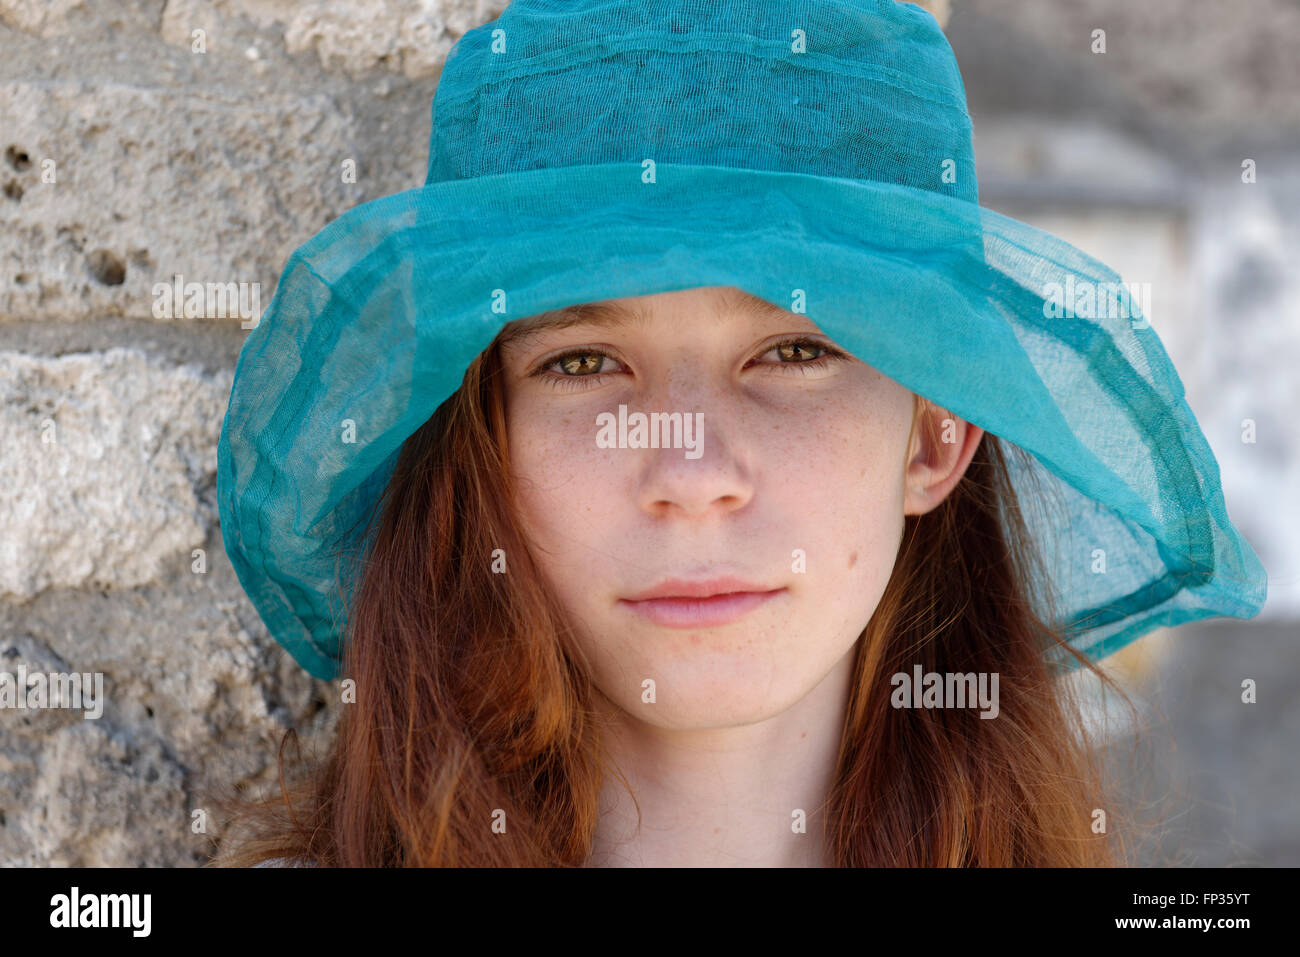 Fille aux cheveux roux avec un chapeau de soleil turquoise à sérieusement, portrait, Italie Banque D'Images